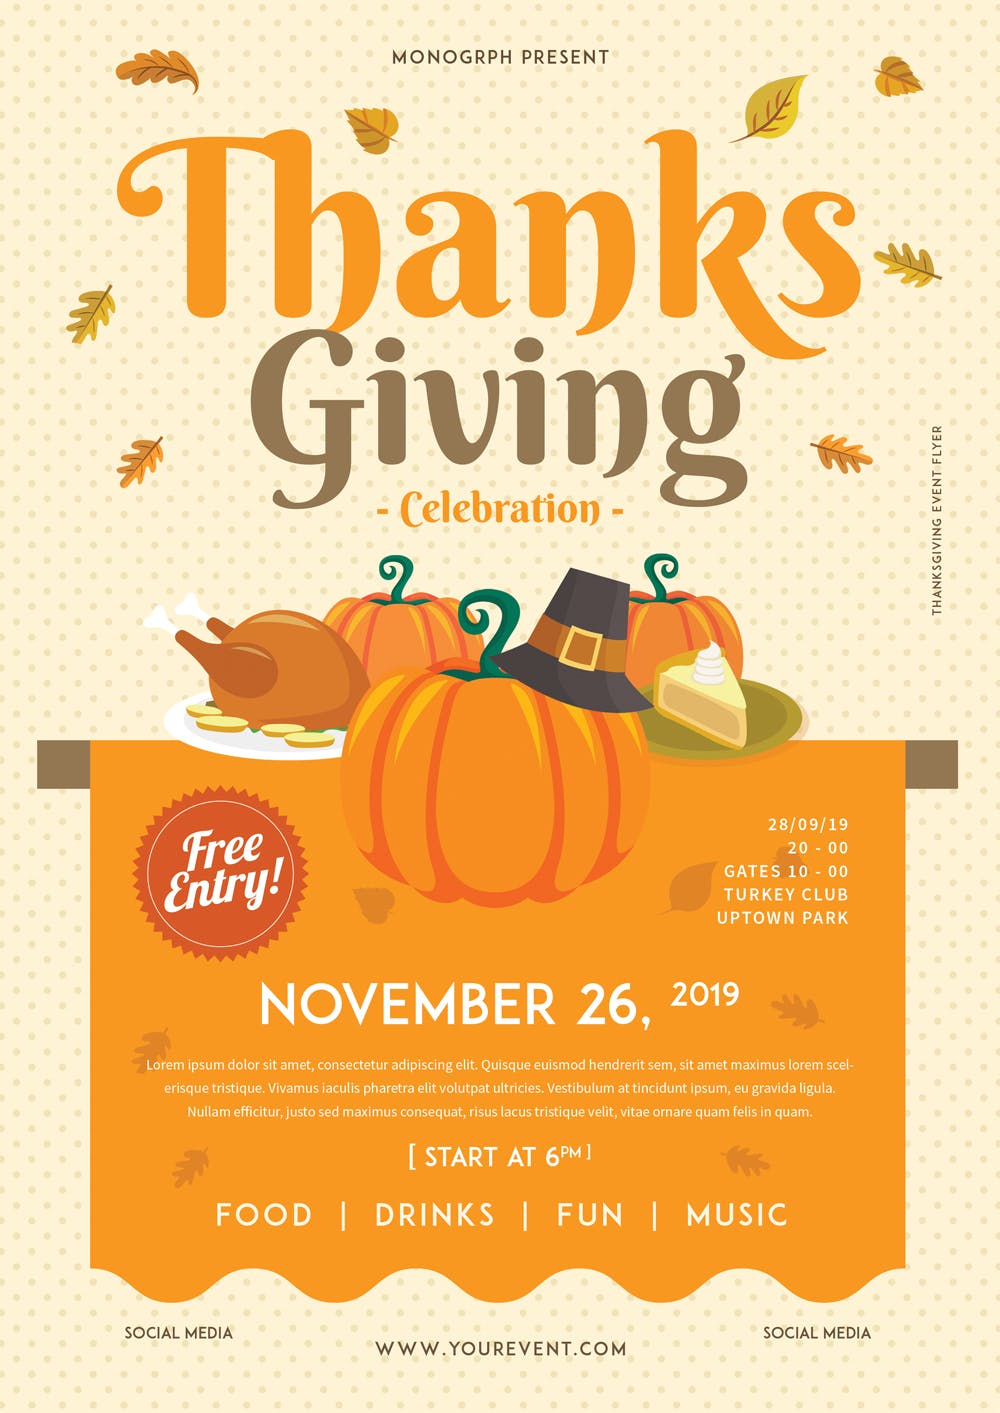 感恩节美食活动邀请海报传单设计模板 Thanksgiving Flyer插图(1)